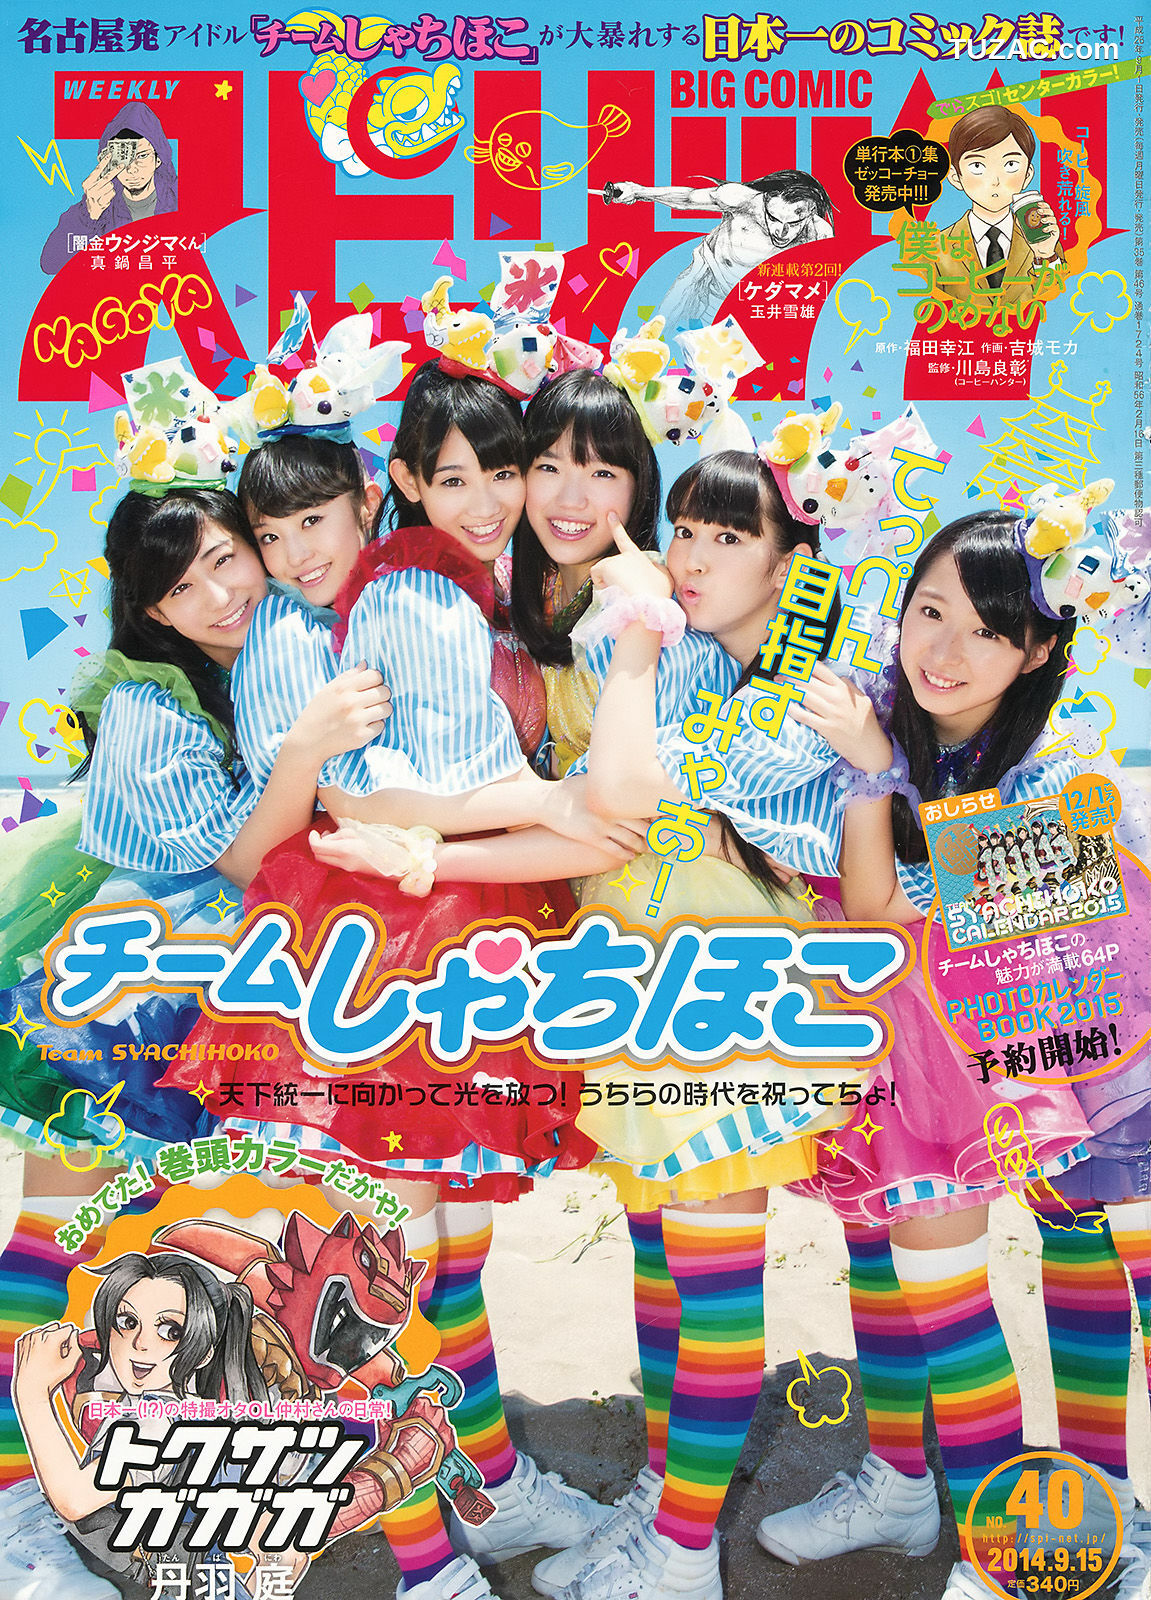 Weekly Big Comic Spirits杂志写真_ チームしゃちほこ 2014年No.40 写真杂志[8P]